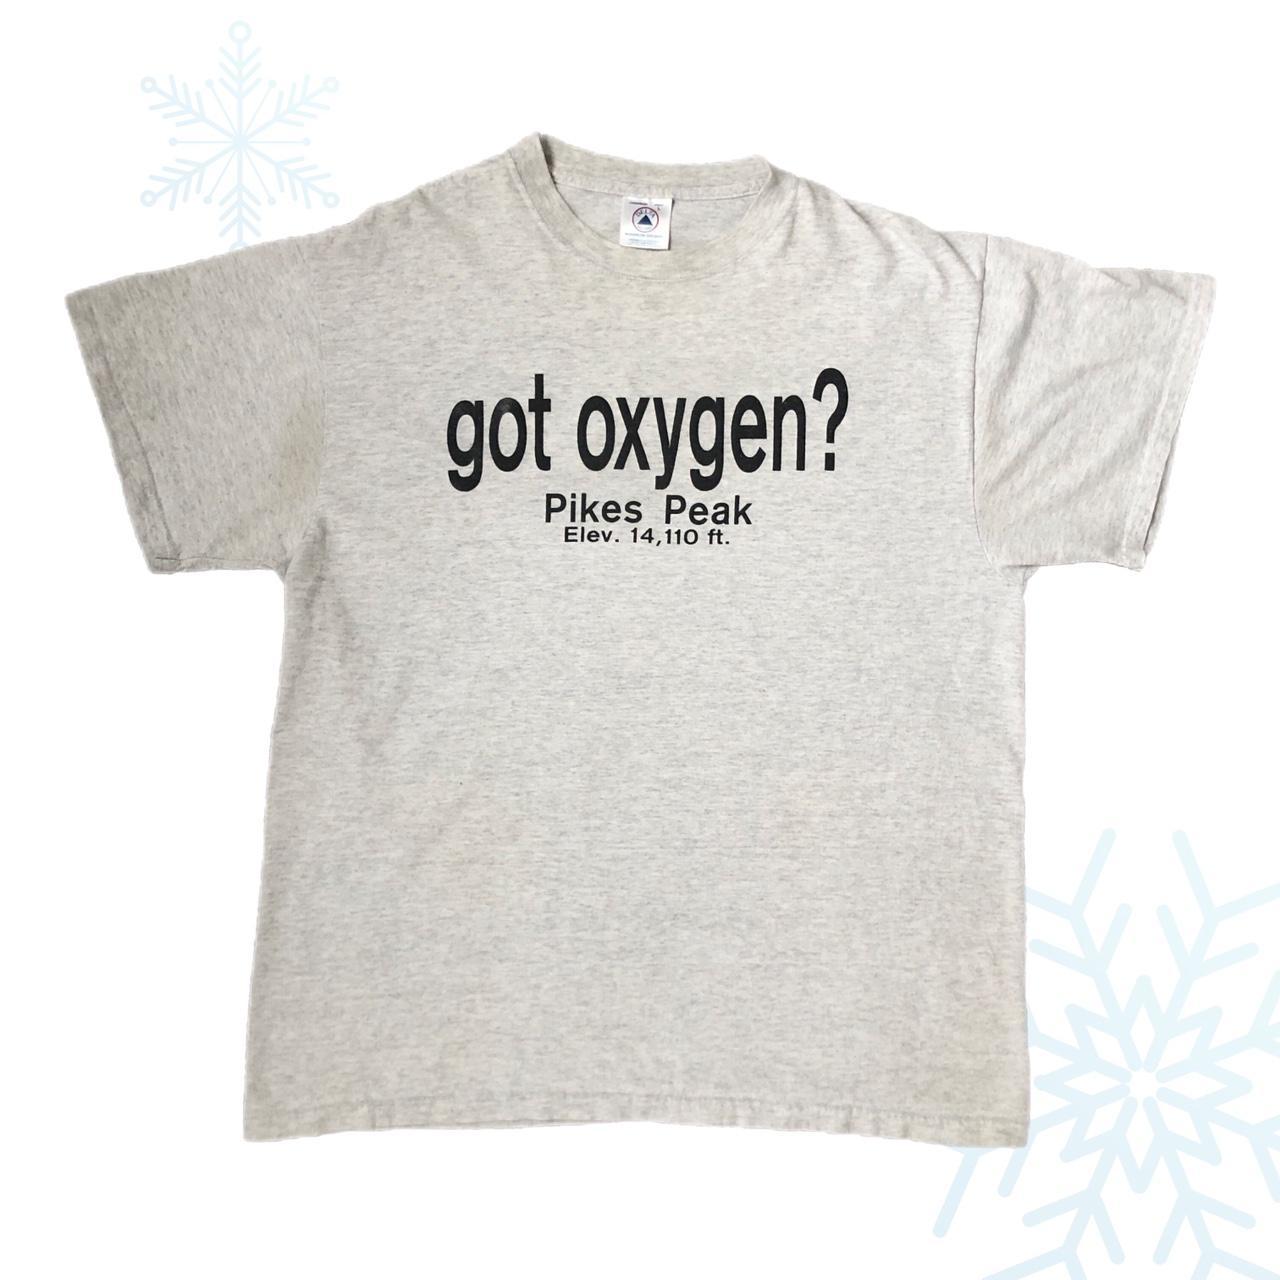 Vintage Pikes Peak "got oxygen?" T-Shirt (L)